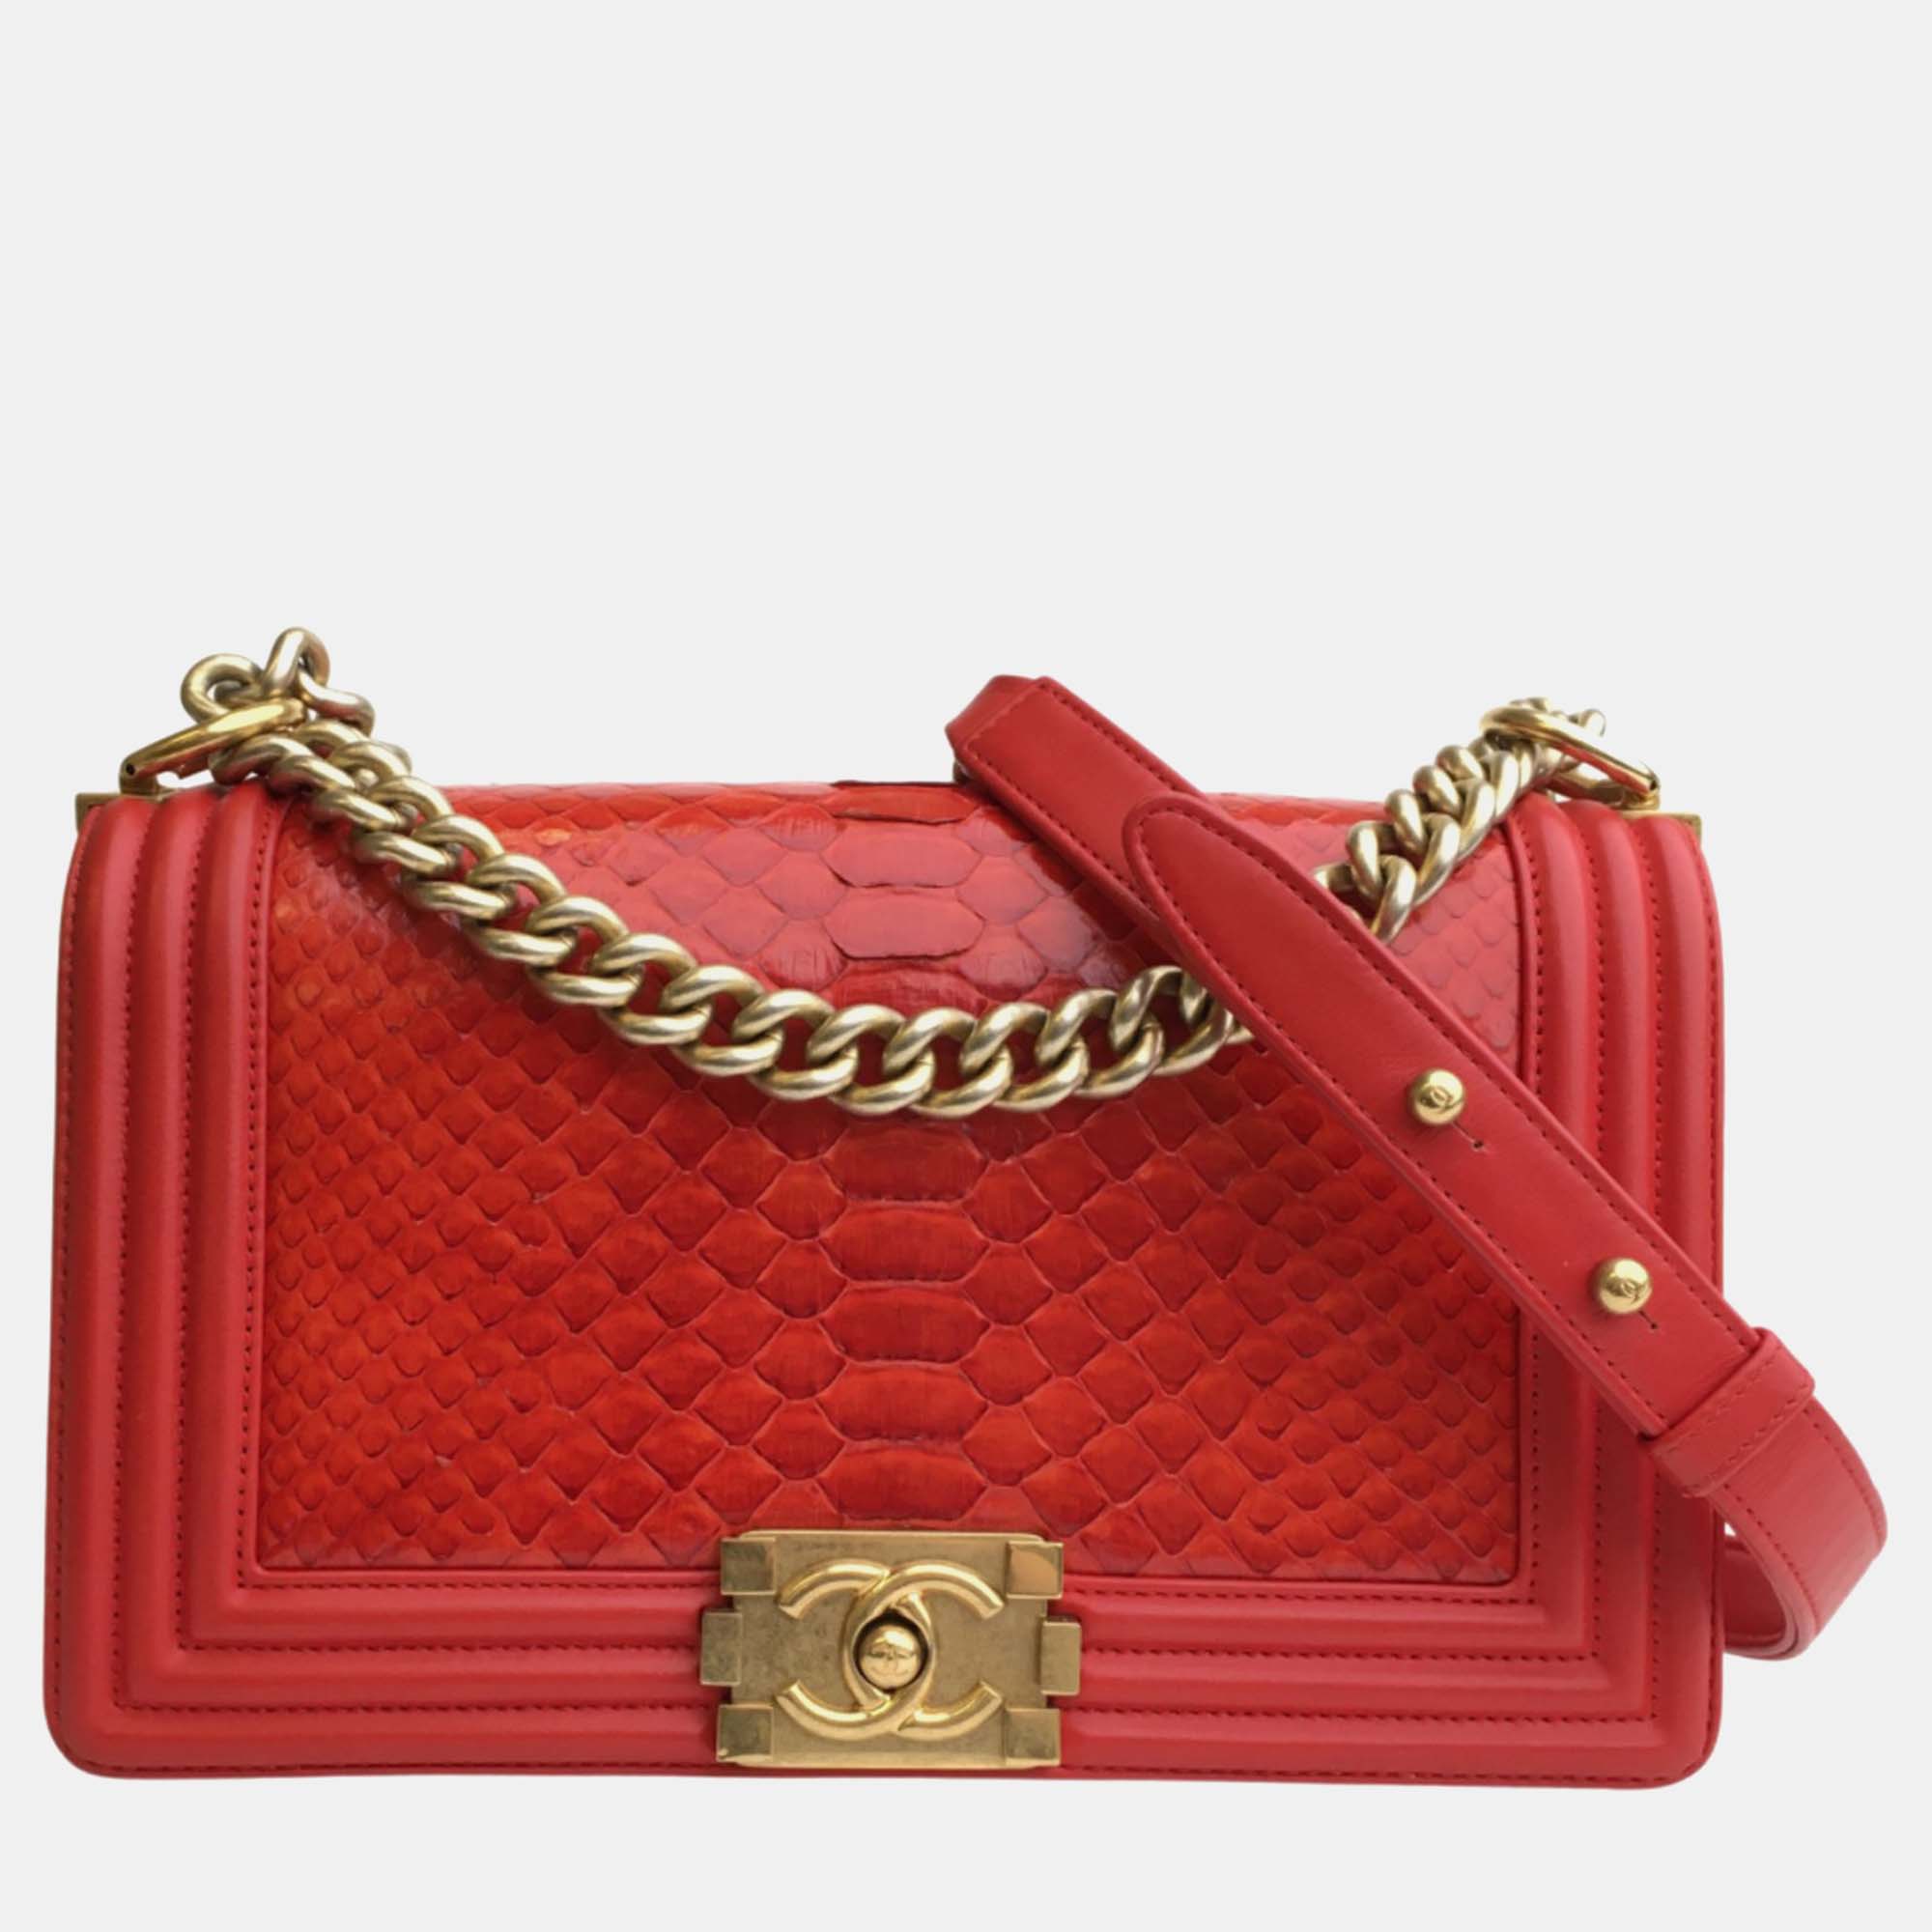 Chanel red patent leather medium boy shoulder bag